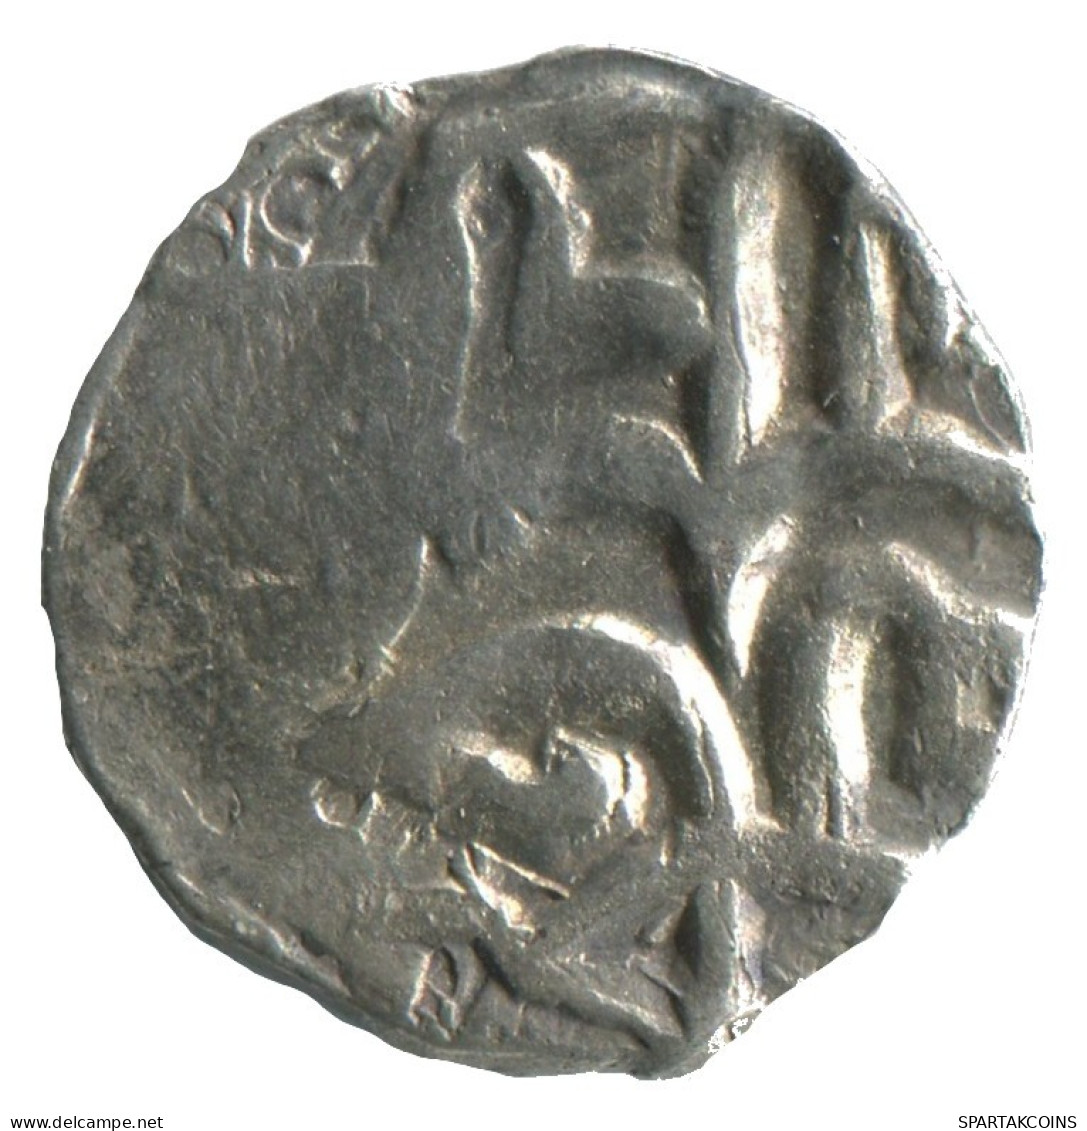 GOLDEN HORDE Silver Dirham Medieval Islamic Coin 1.3g/16mm #NNN2017.8.D.A - Islamic